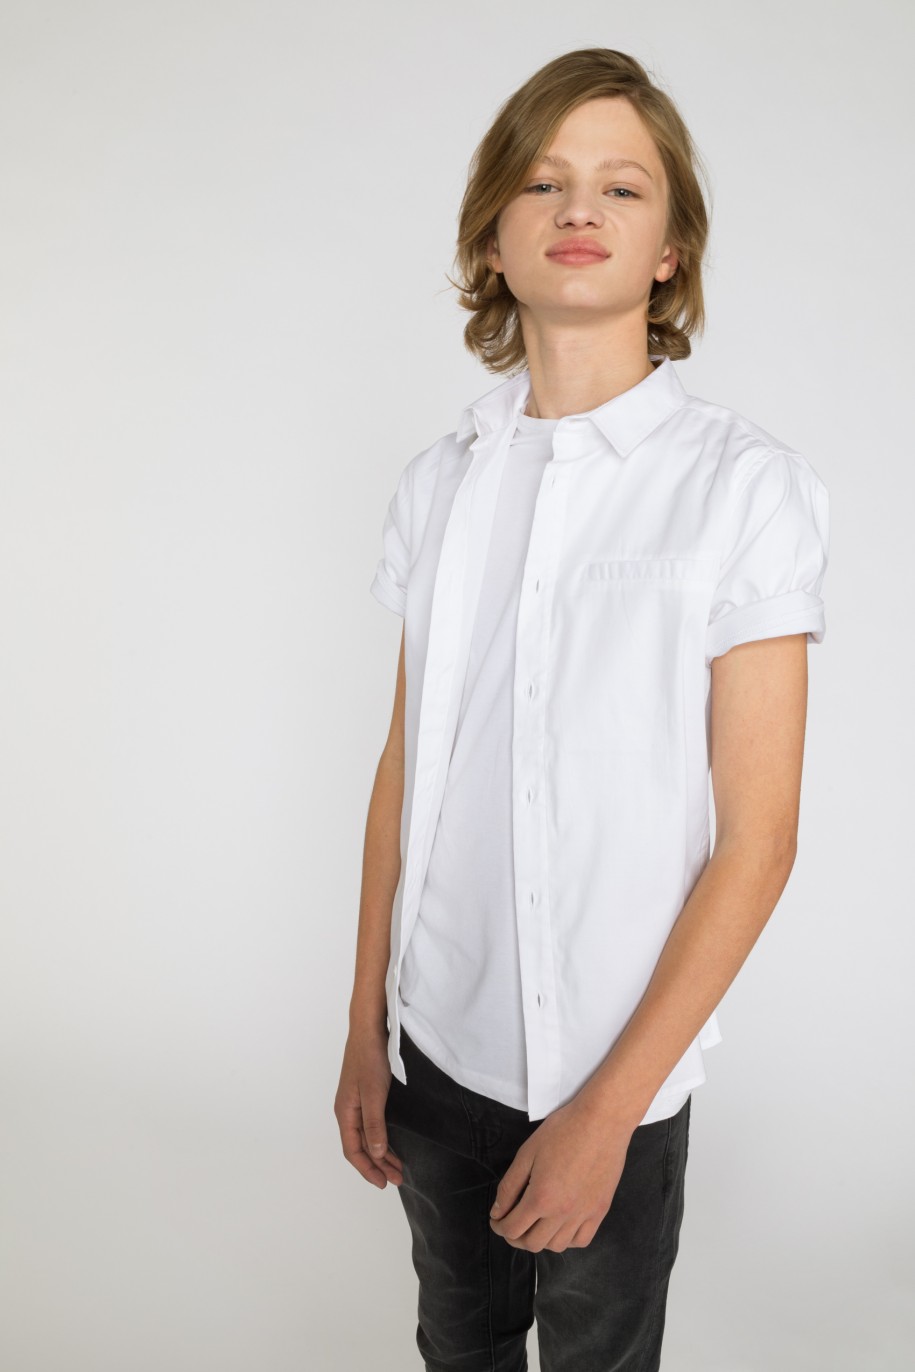 Biała koszula z krótkim rękawem dla chłopaka - 33851